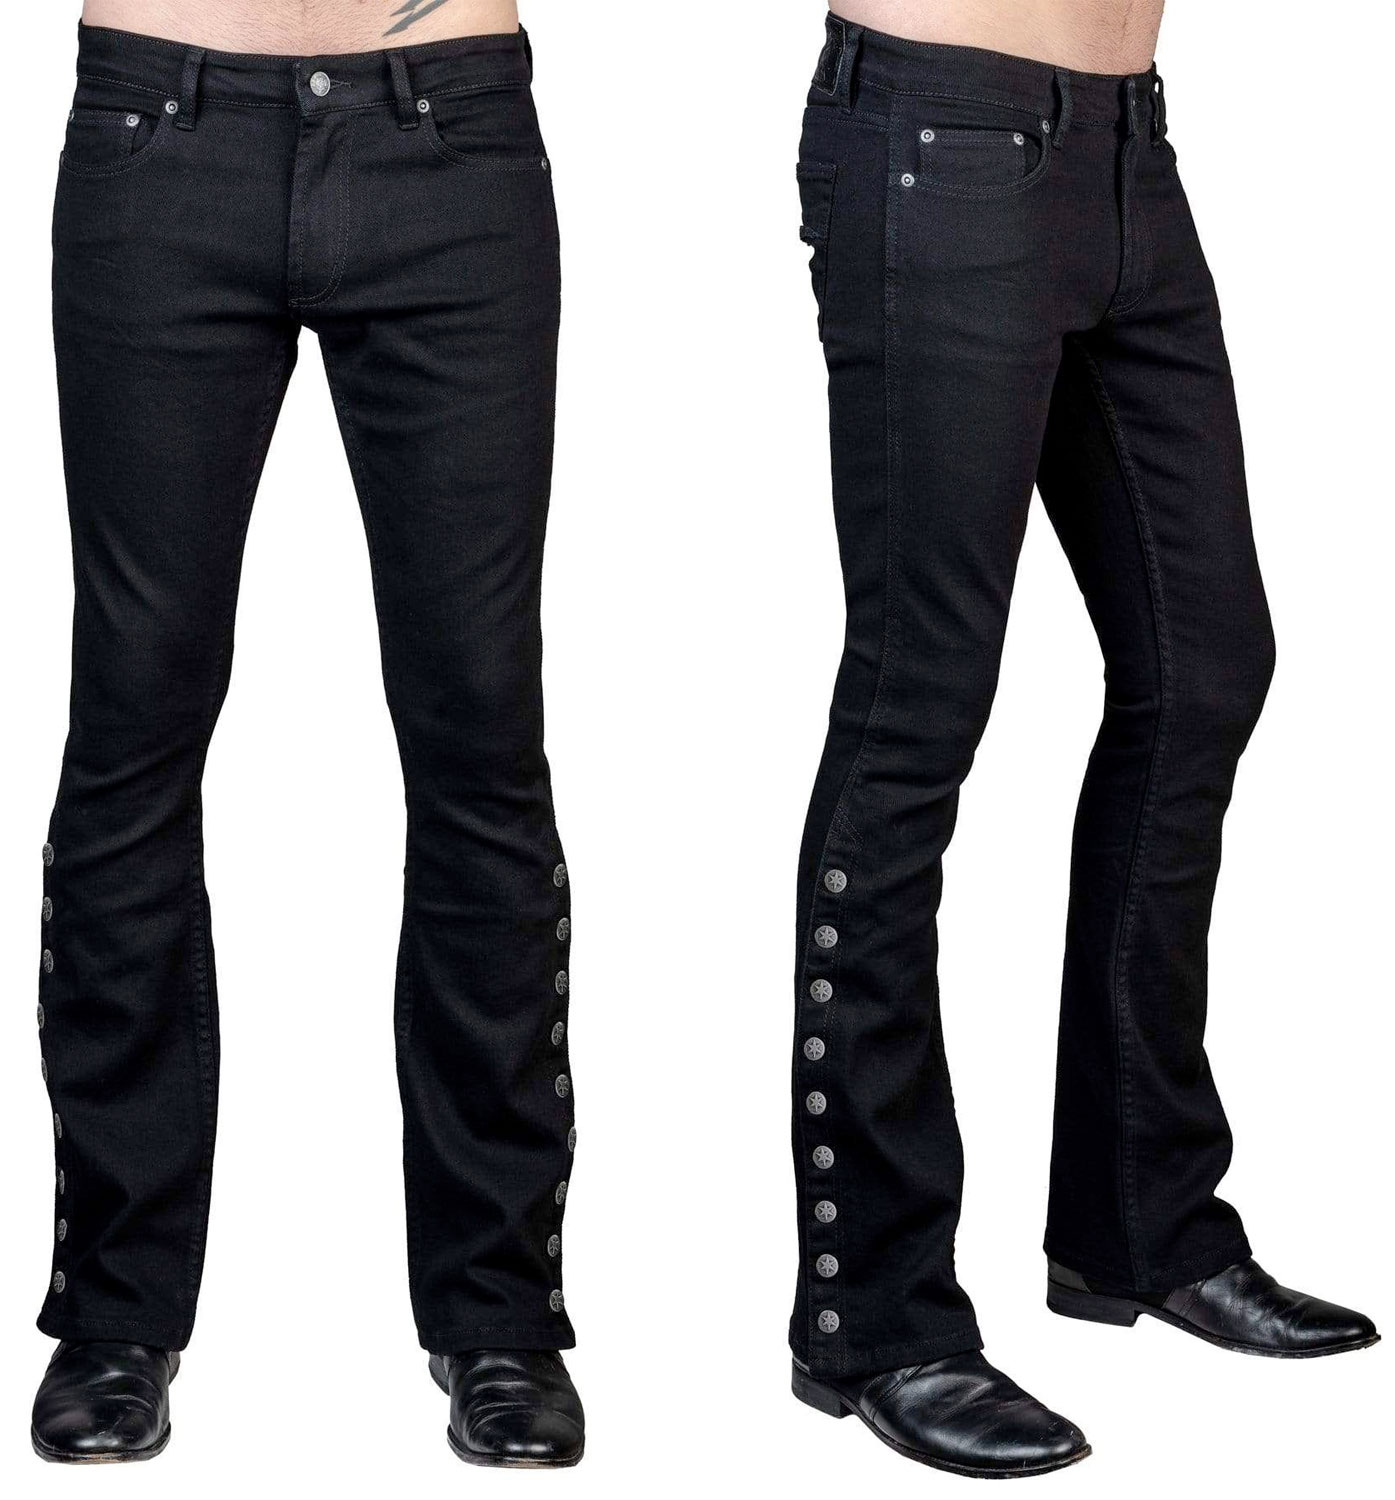 Wornstar Clothing Hellraiser Waxed Denim Stage Jeans